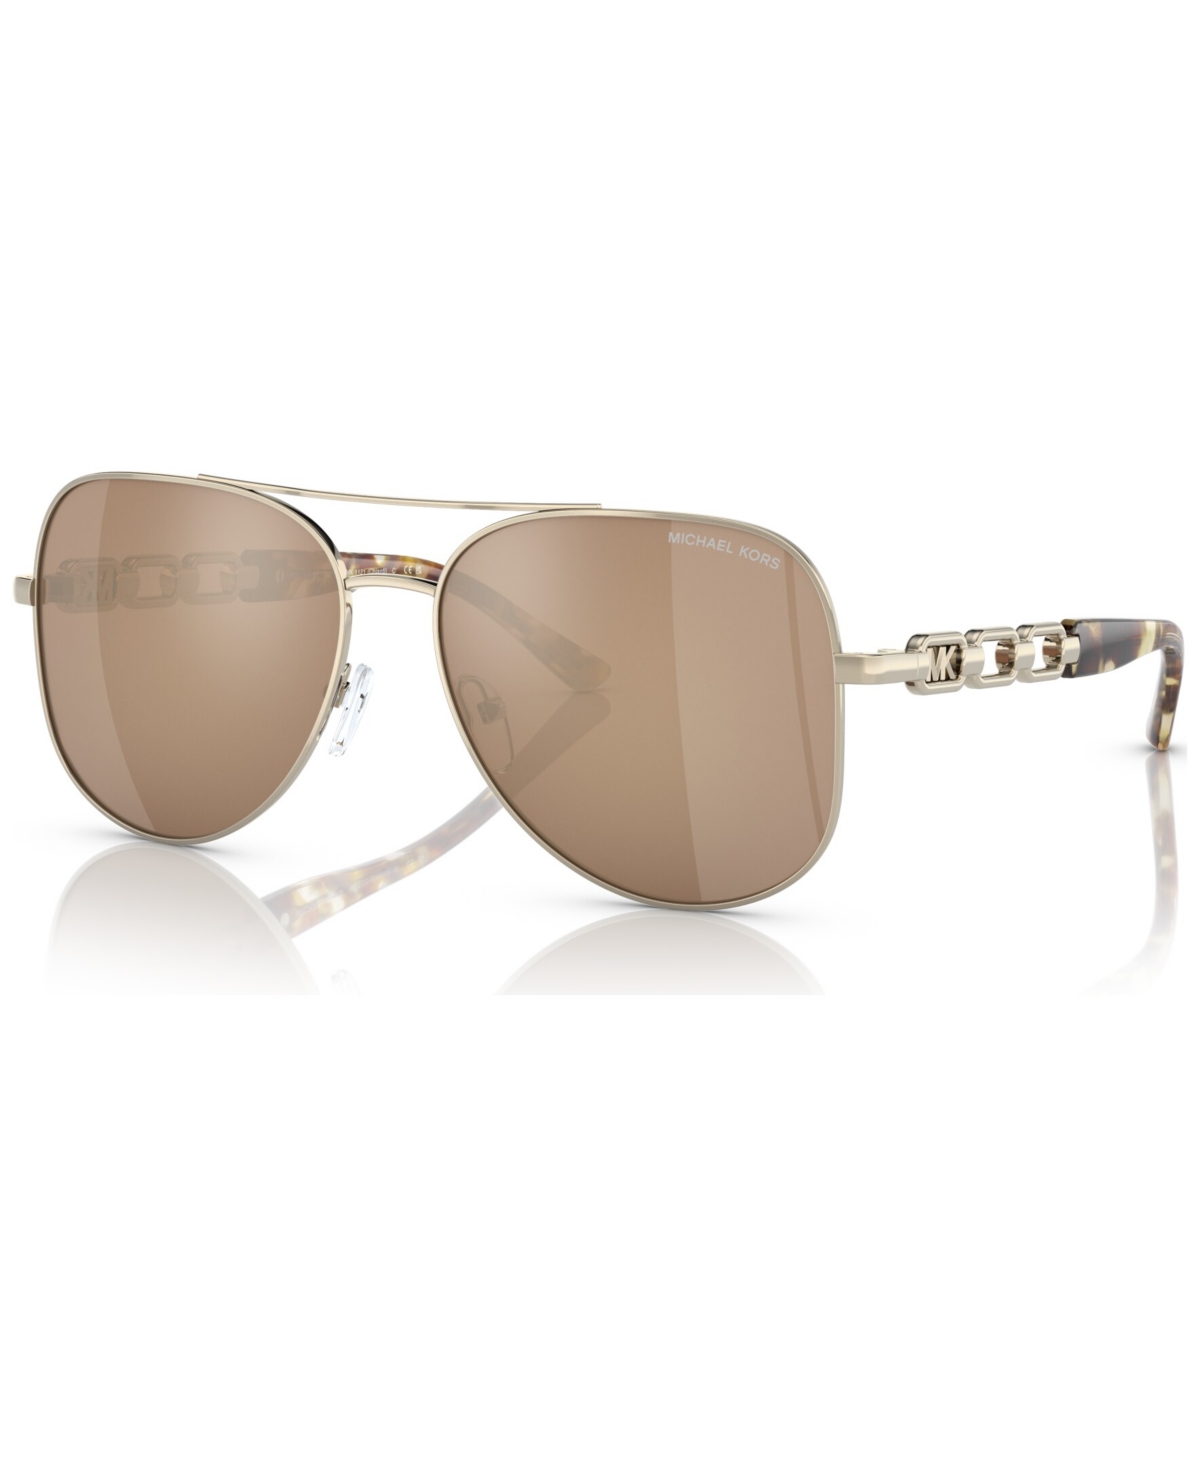 Michael Kors Women's Sunglasses, Mk1121 In Light Gold-tone